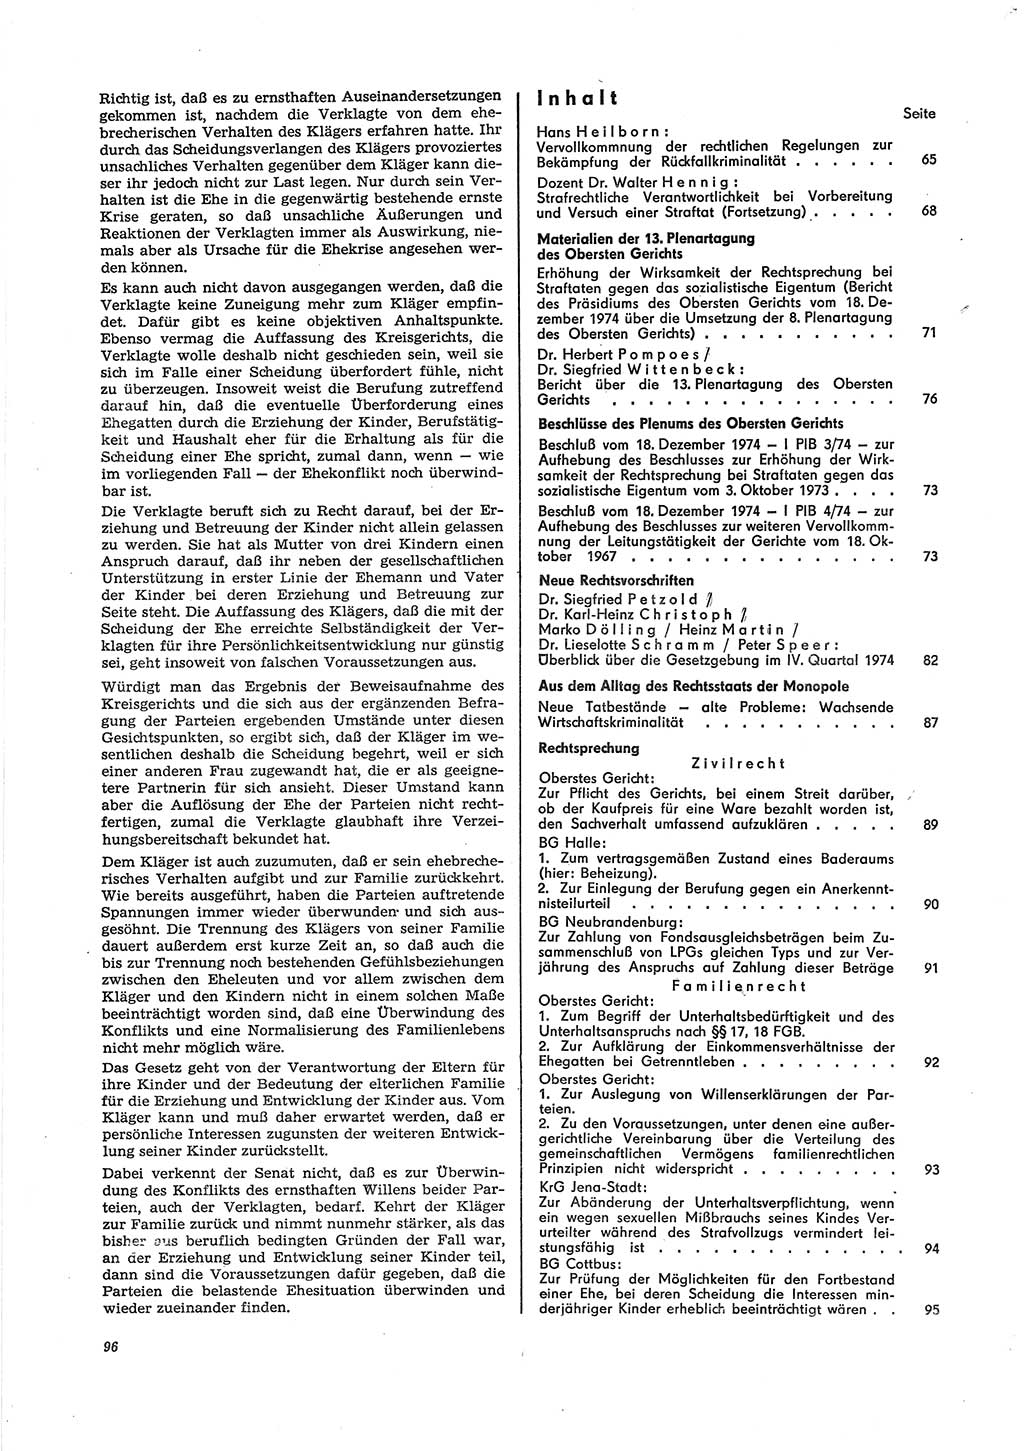 Neue Justiz (NJ), Zeitschrift für Recht und Rechtswissenschaft [Deutsche Demokratische Republik (DDR)], 29. Jahrgang 1975, Seite 96 (NJ DDR 1975, S. 96)